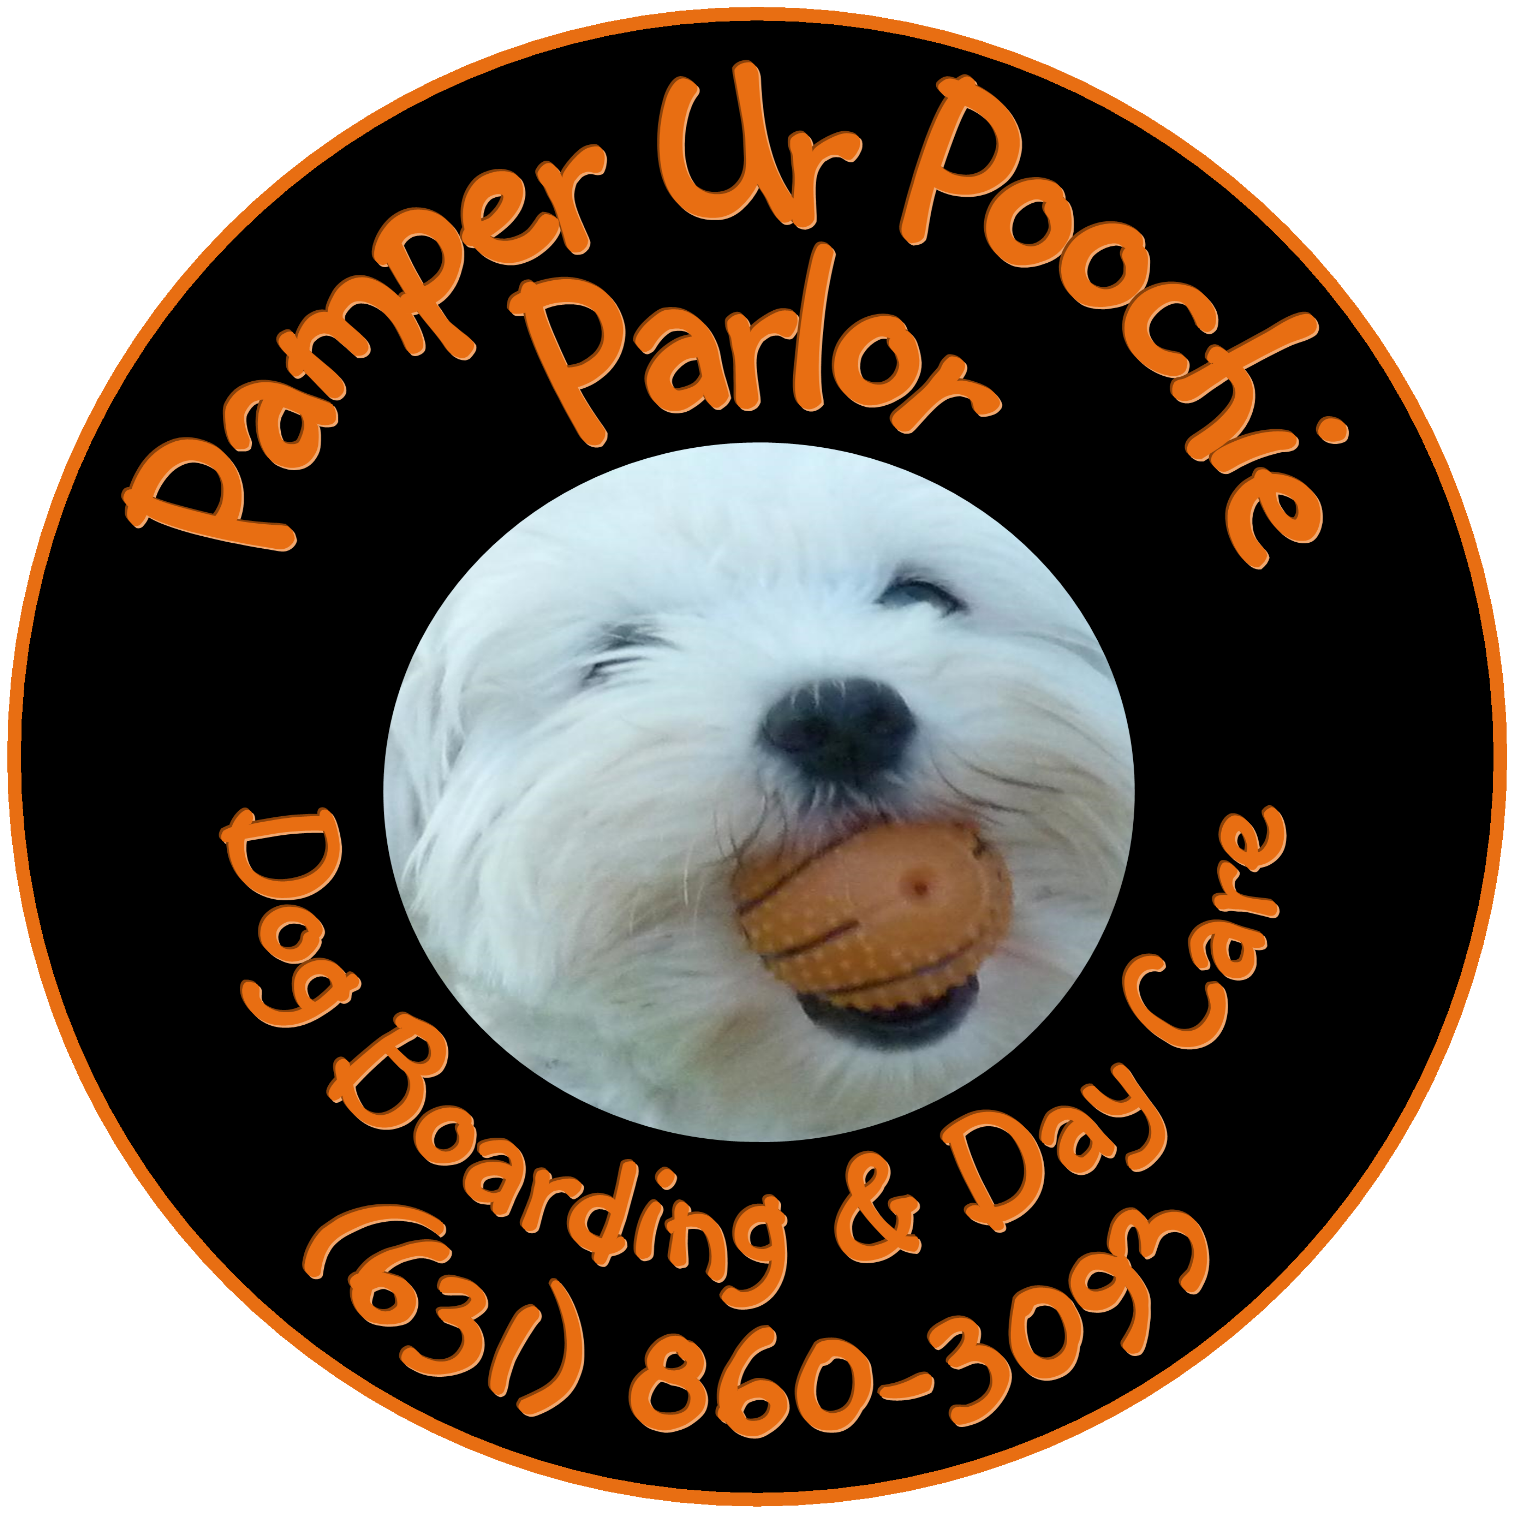 Pamper Ur Poochie Parlor - Dog Boarding & Day Care